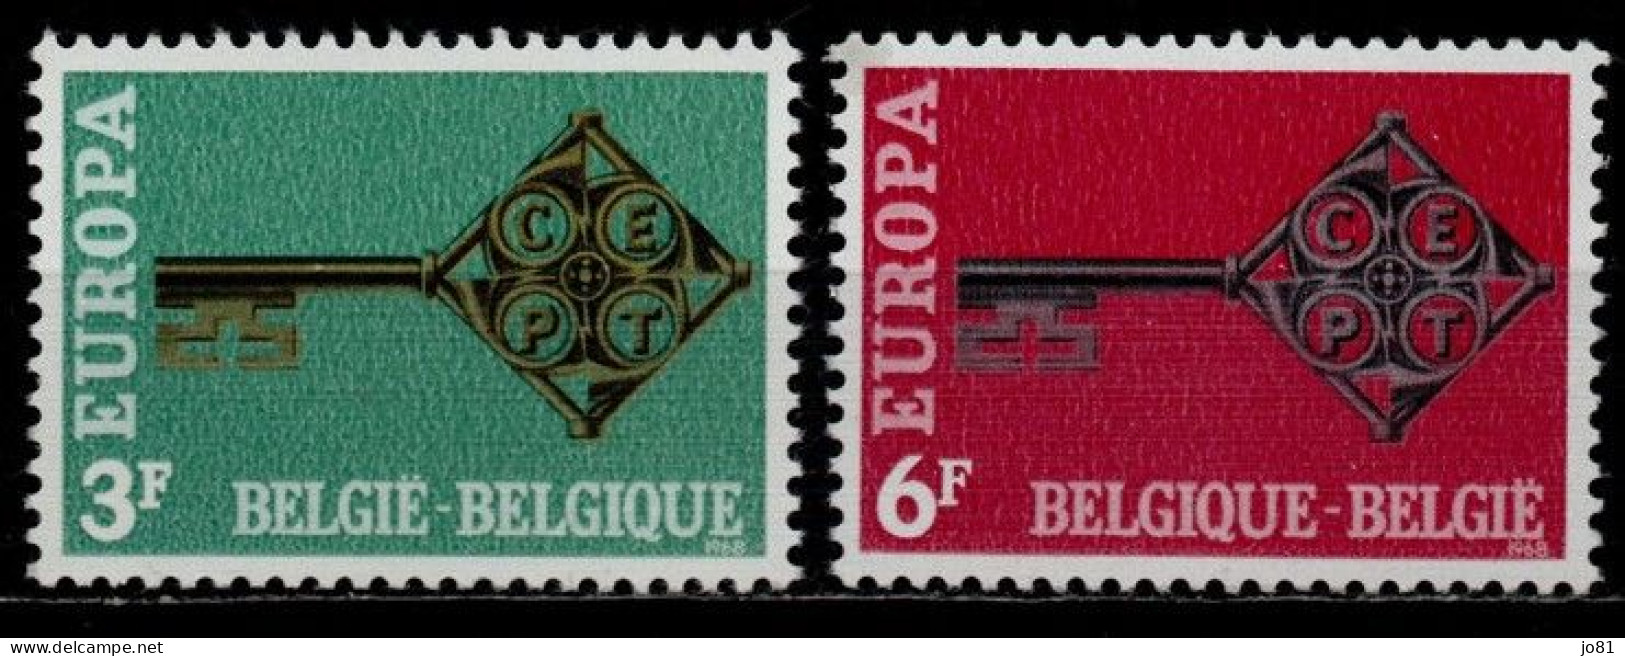 Belgique YT 1452-1453 Neuf Sans Charnière - XX - MNH Europa 1968 - Ungebraucht